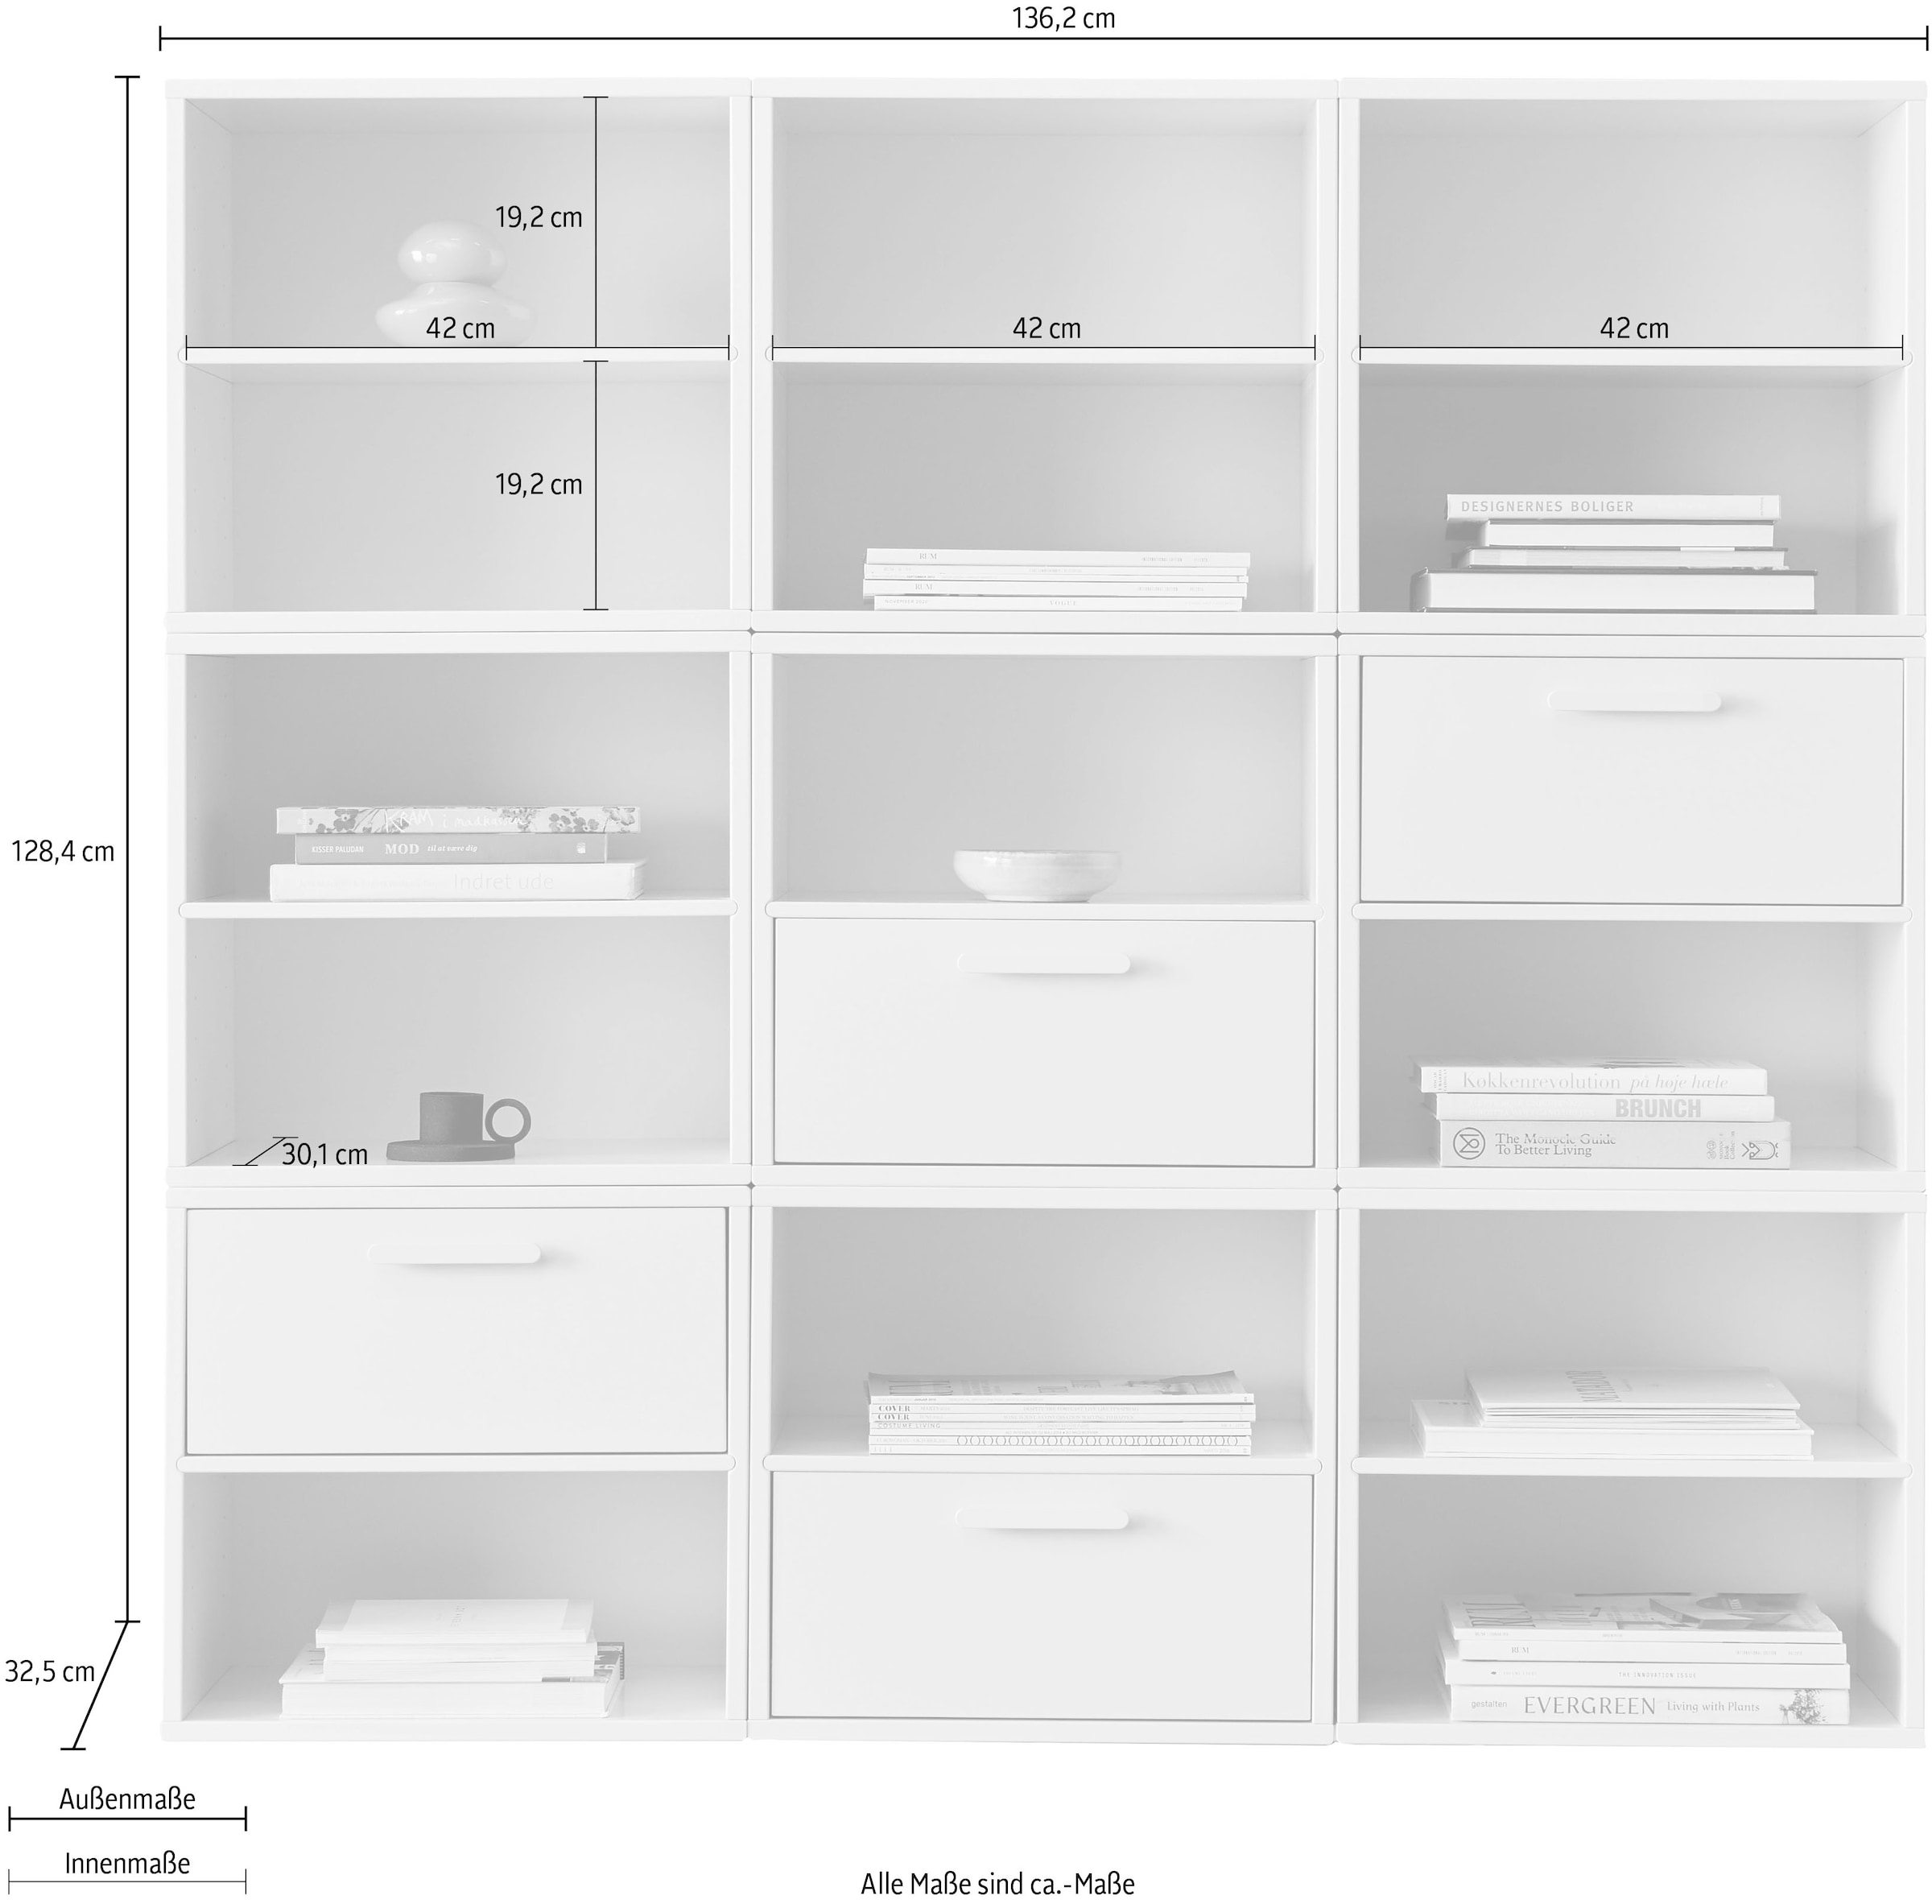 Hammel Furniture Bücherregal »Keep by Hammel«, aus 9 Modulen, mit 4 unterschiedl.farbenen Schubladen, Breite 136,2 cm